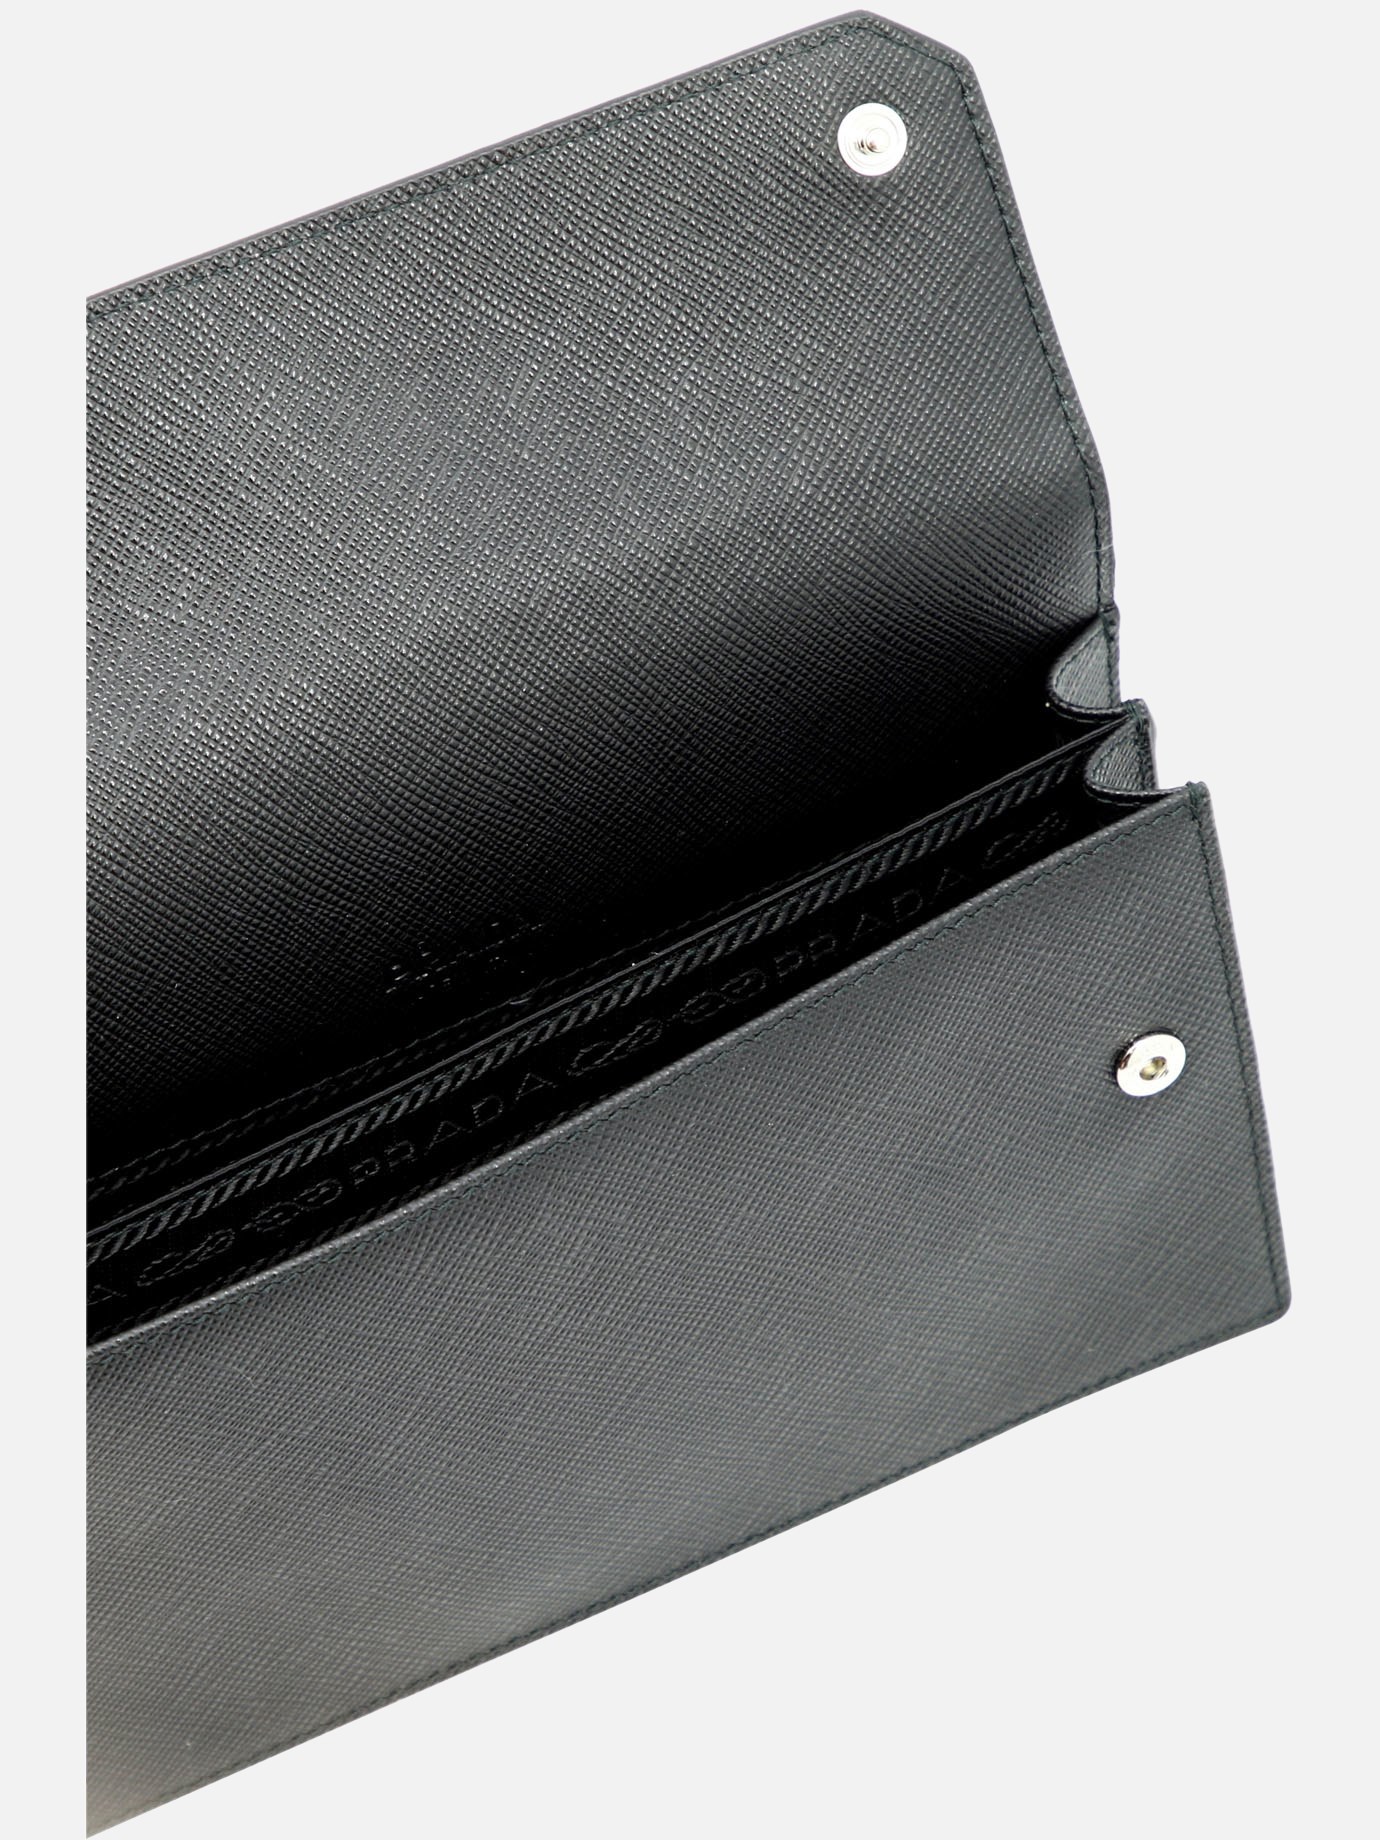 Porta smartphone in pelle saffiano by Prada